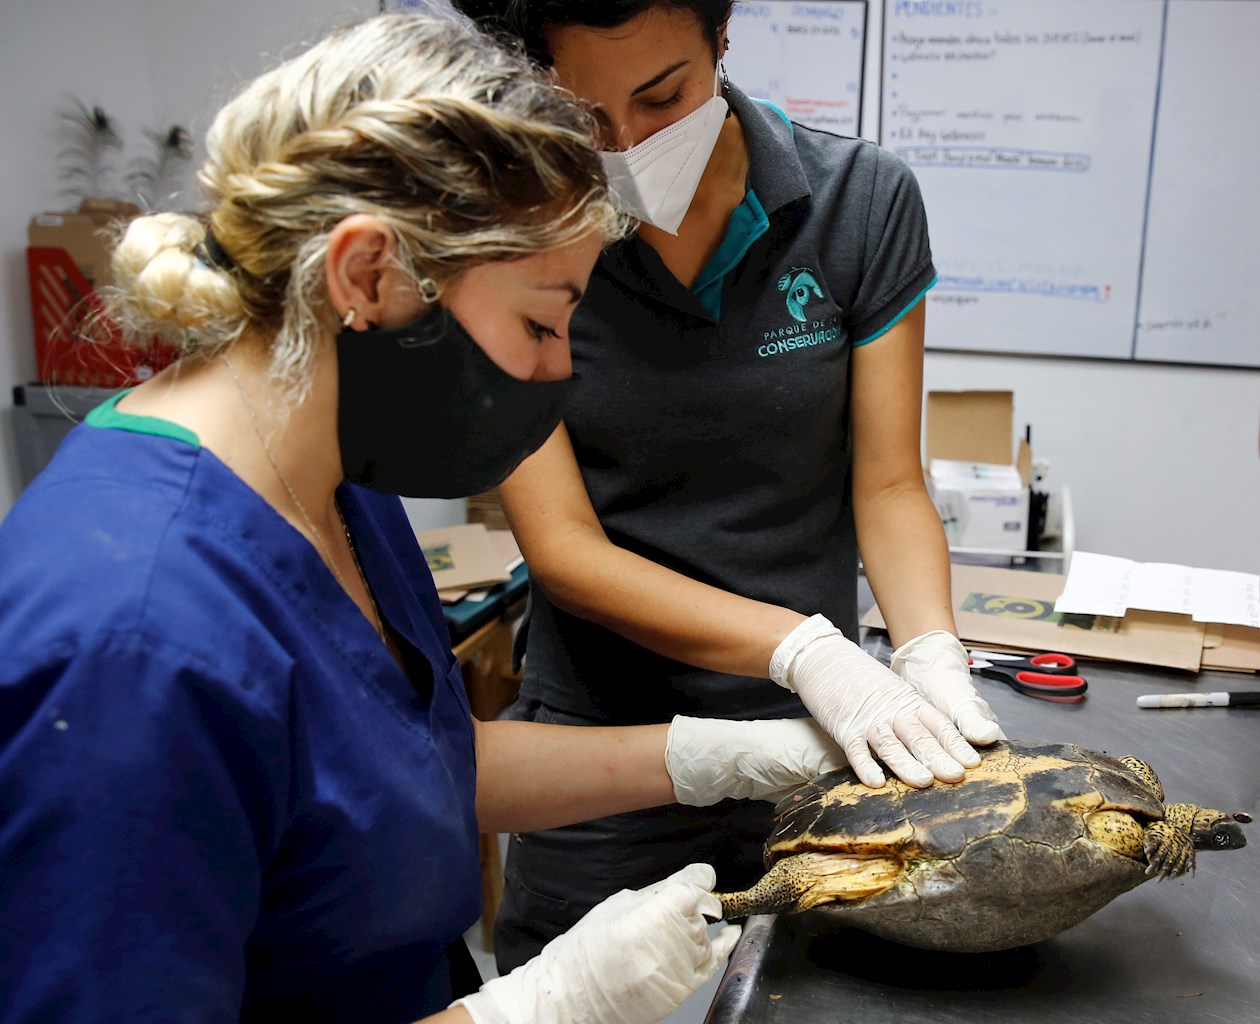 Más de 100 tortugas son sometidas en Medellín a valoraciones médicas y biológicas por expertos del Parque de la Conservación para determinar si son aptas para su liberación.